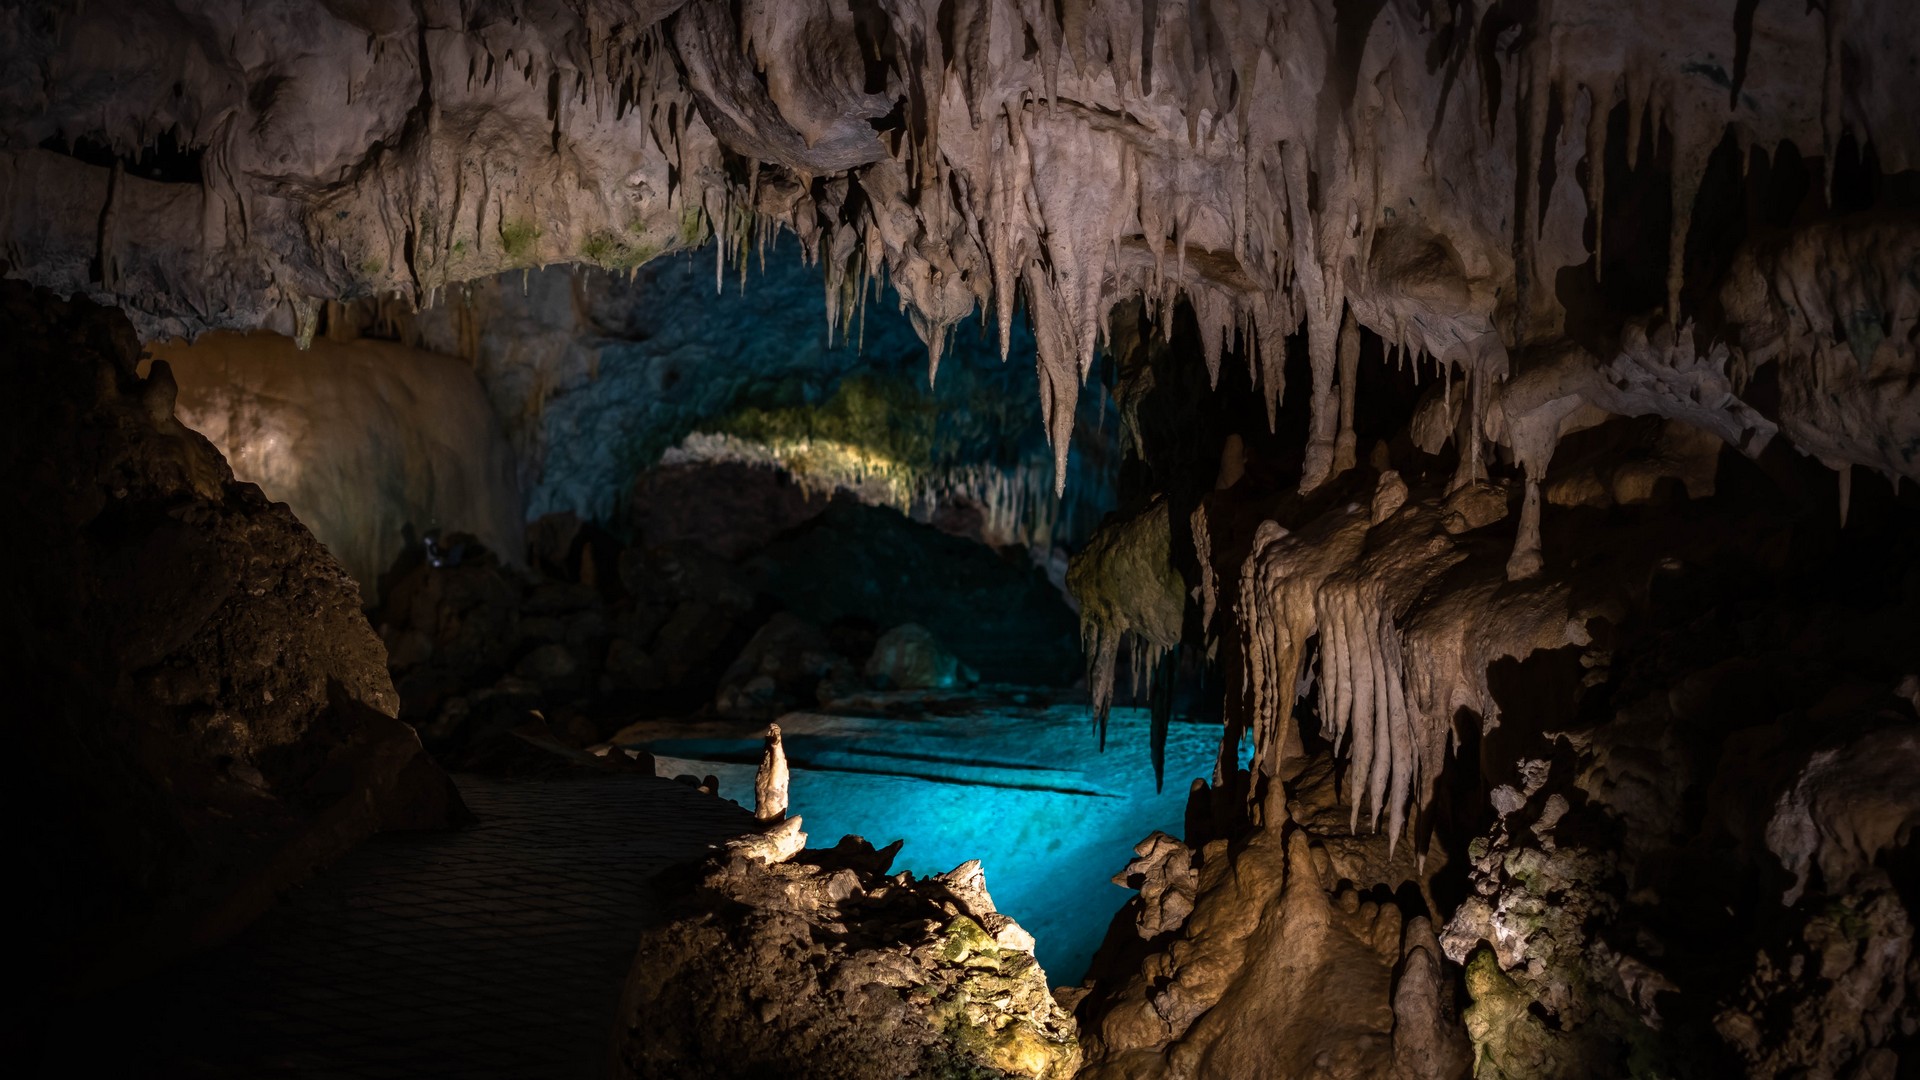 Σπήλαιο Ανεμότρυπας: Το travelgirl.gr σε ξεναγεί στο πιο λευκό σπήλαιο της Ελλάδας!